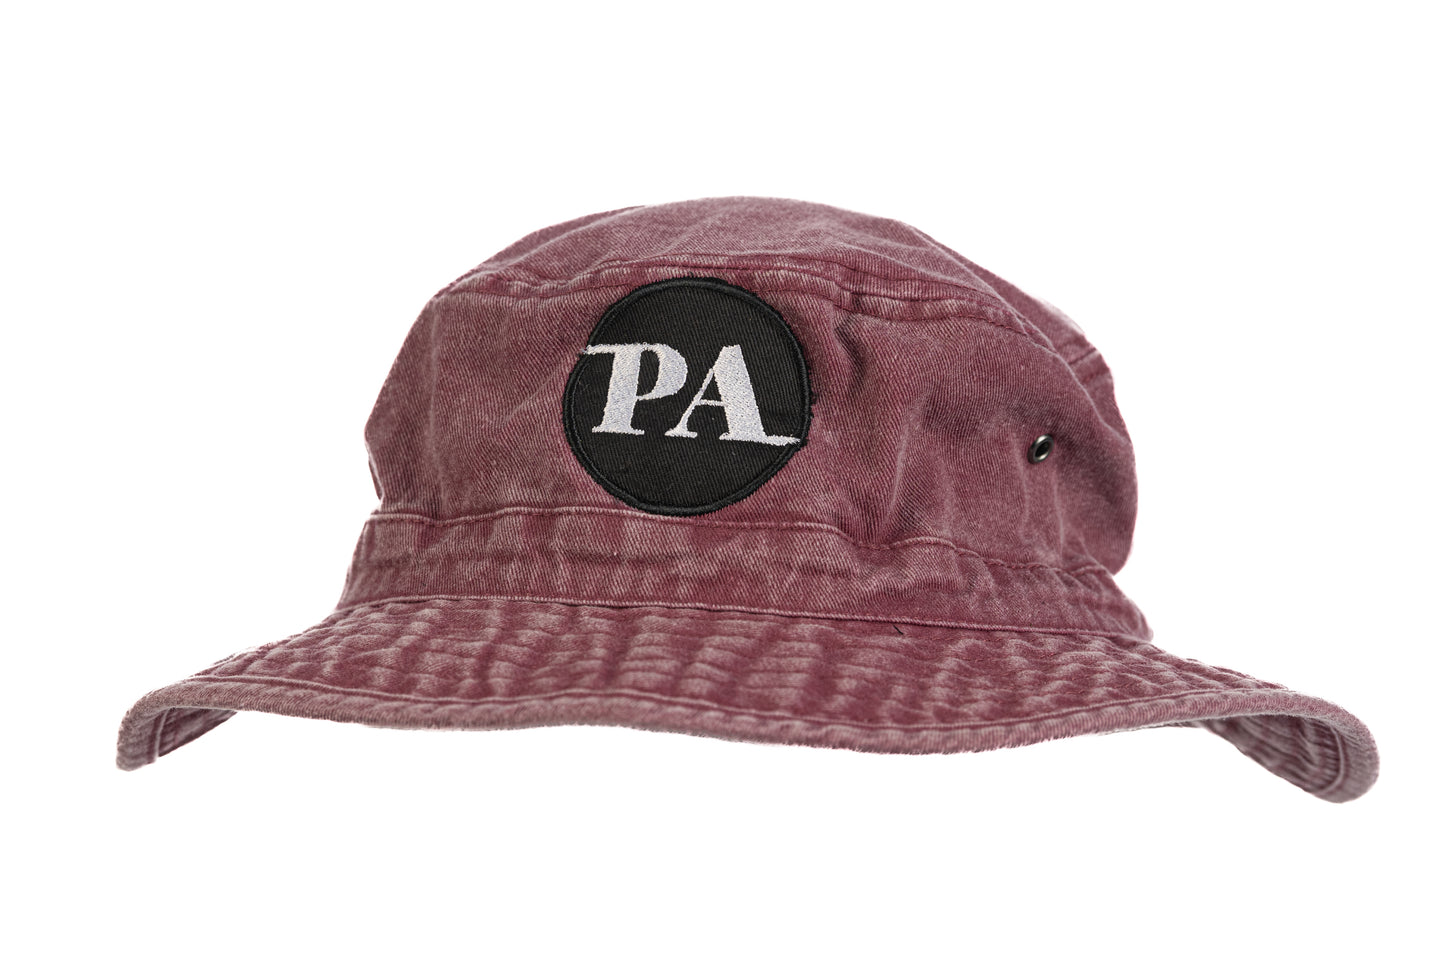 "PA" Bucket Hat